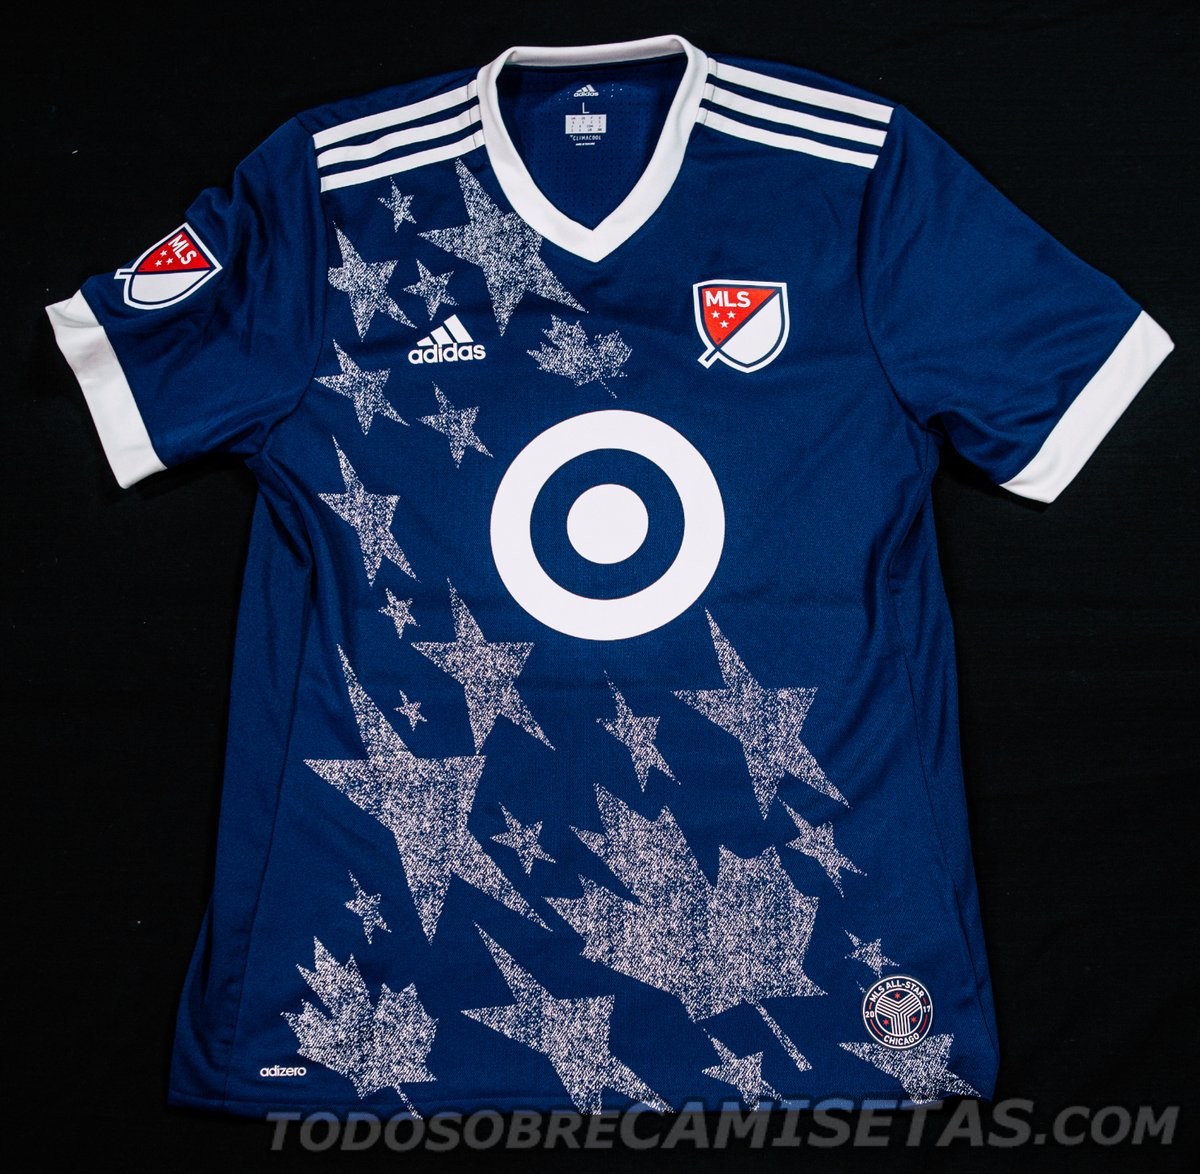 MLS All Star 2017 adidas Kit